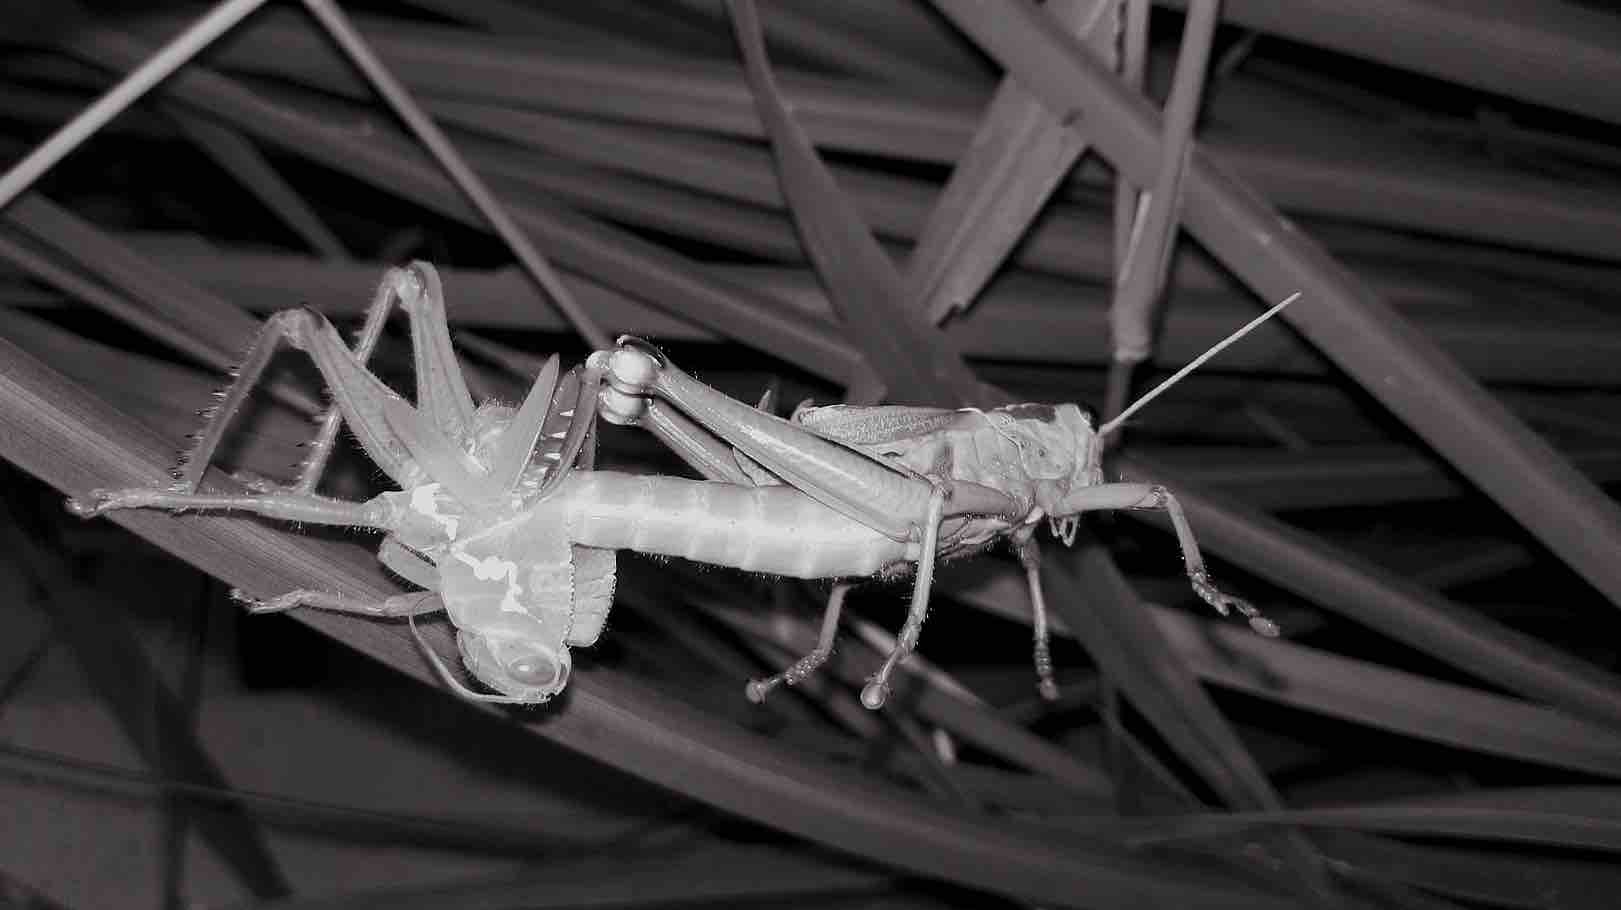 La Chitina, Esoscheletro degli insetti in uso industriale